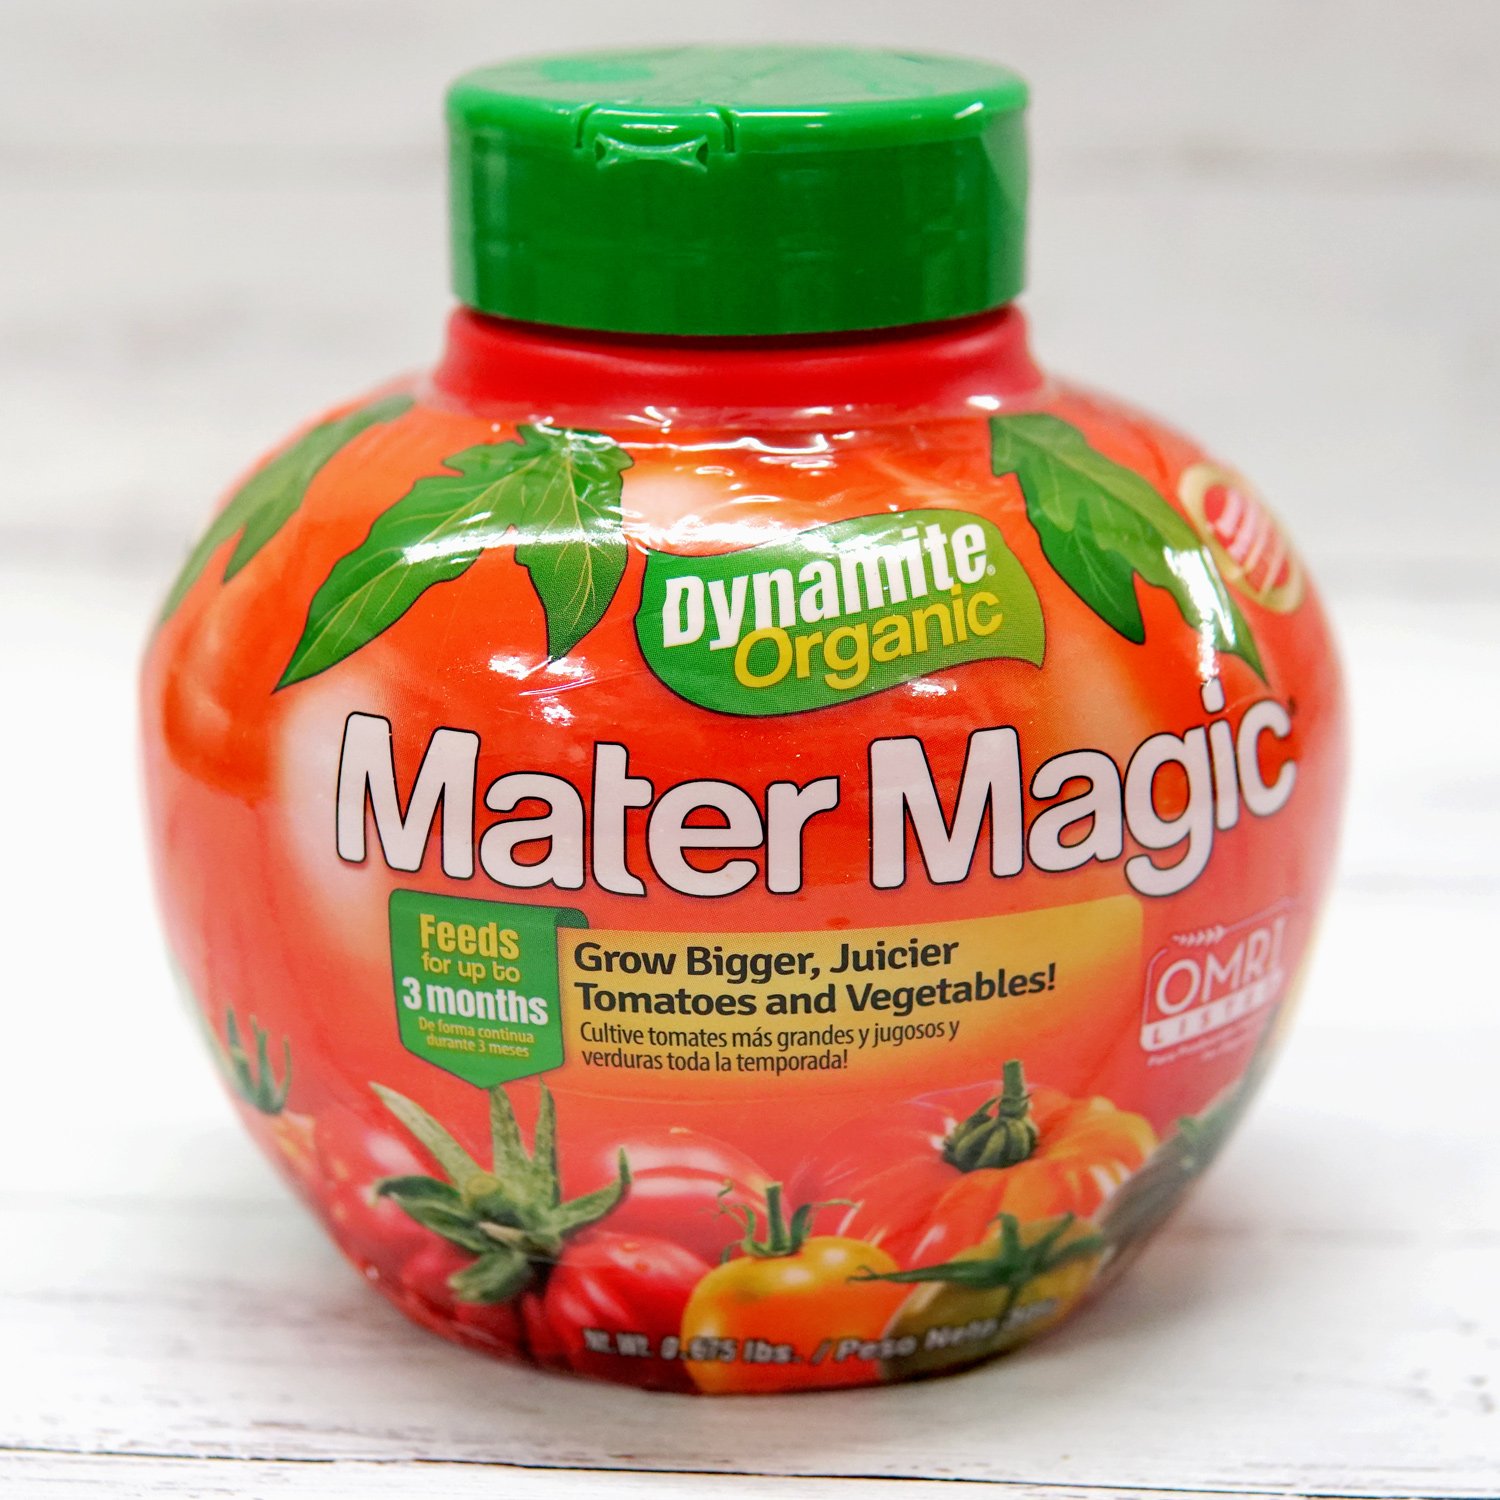 Mater Magic